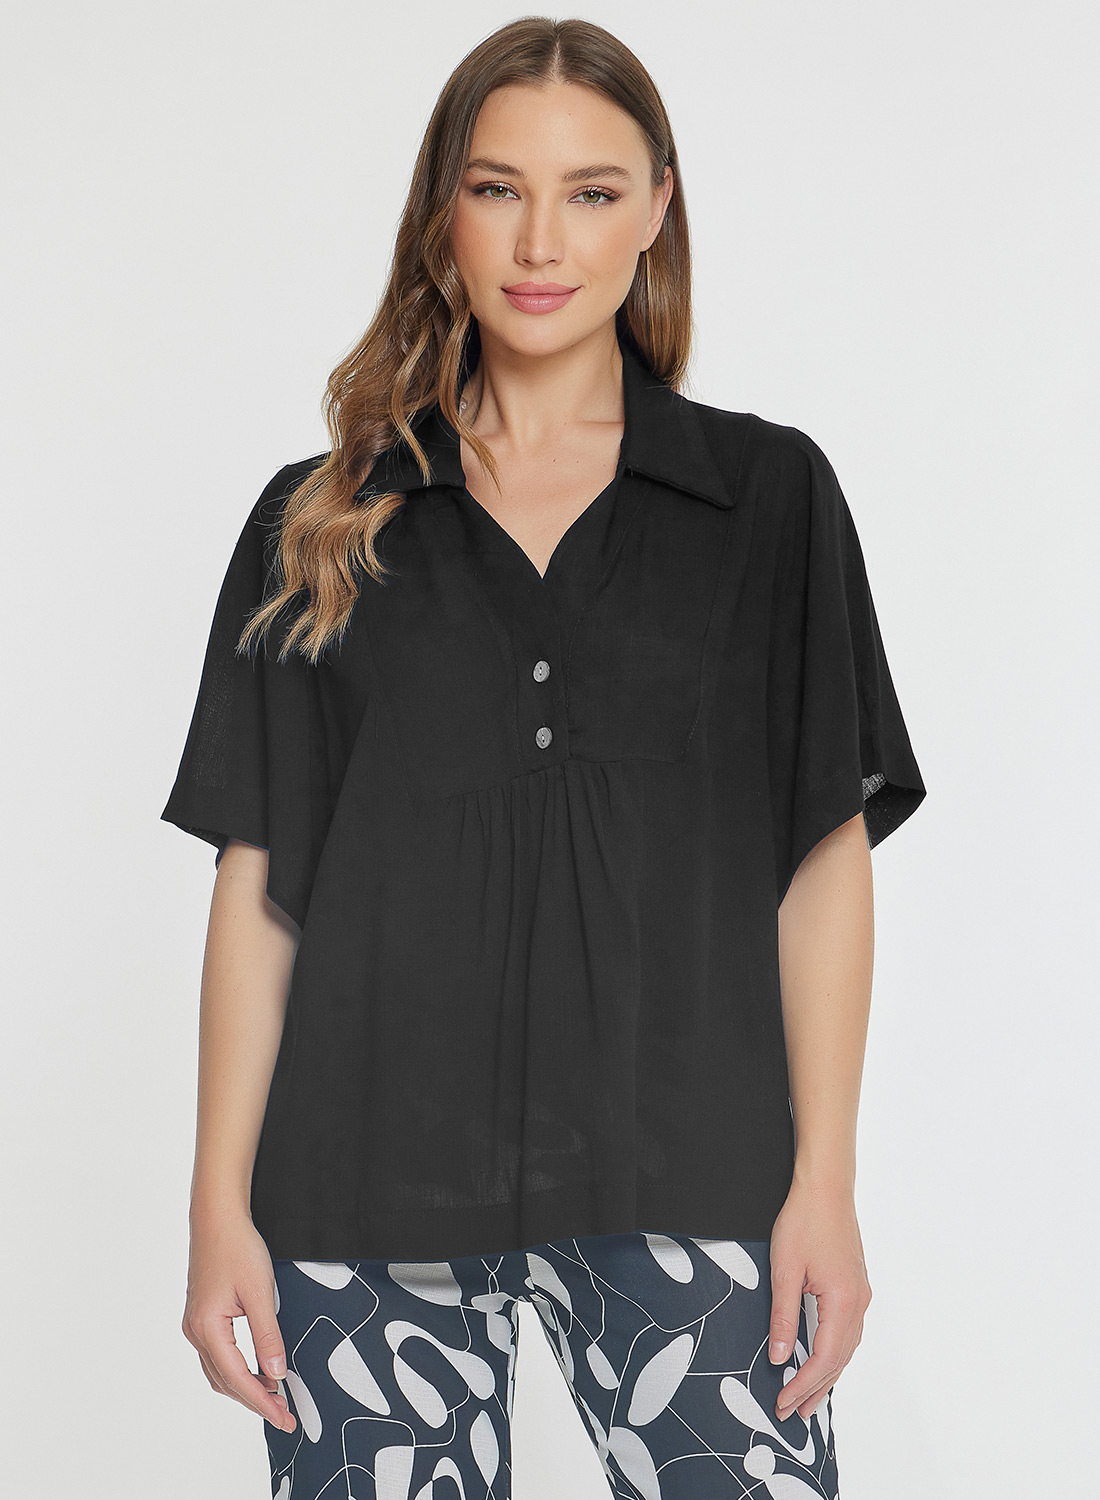 Μαύρη μονόχρωμη μπλούζα με γιακά